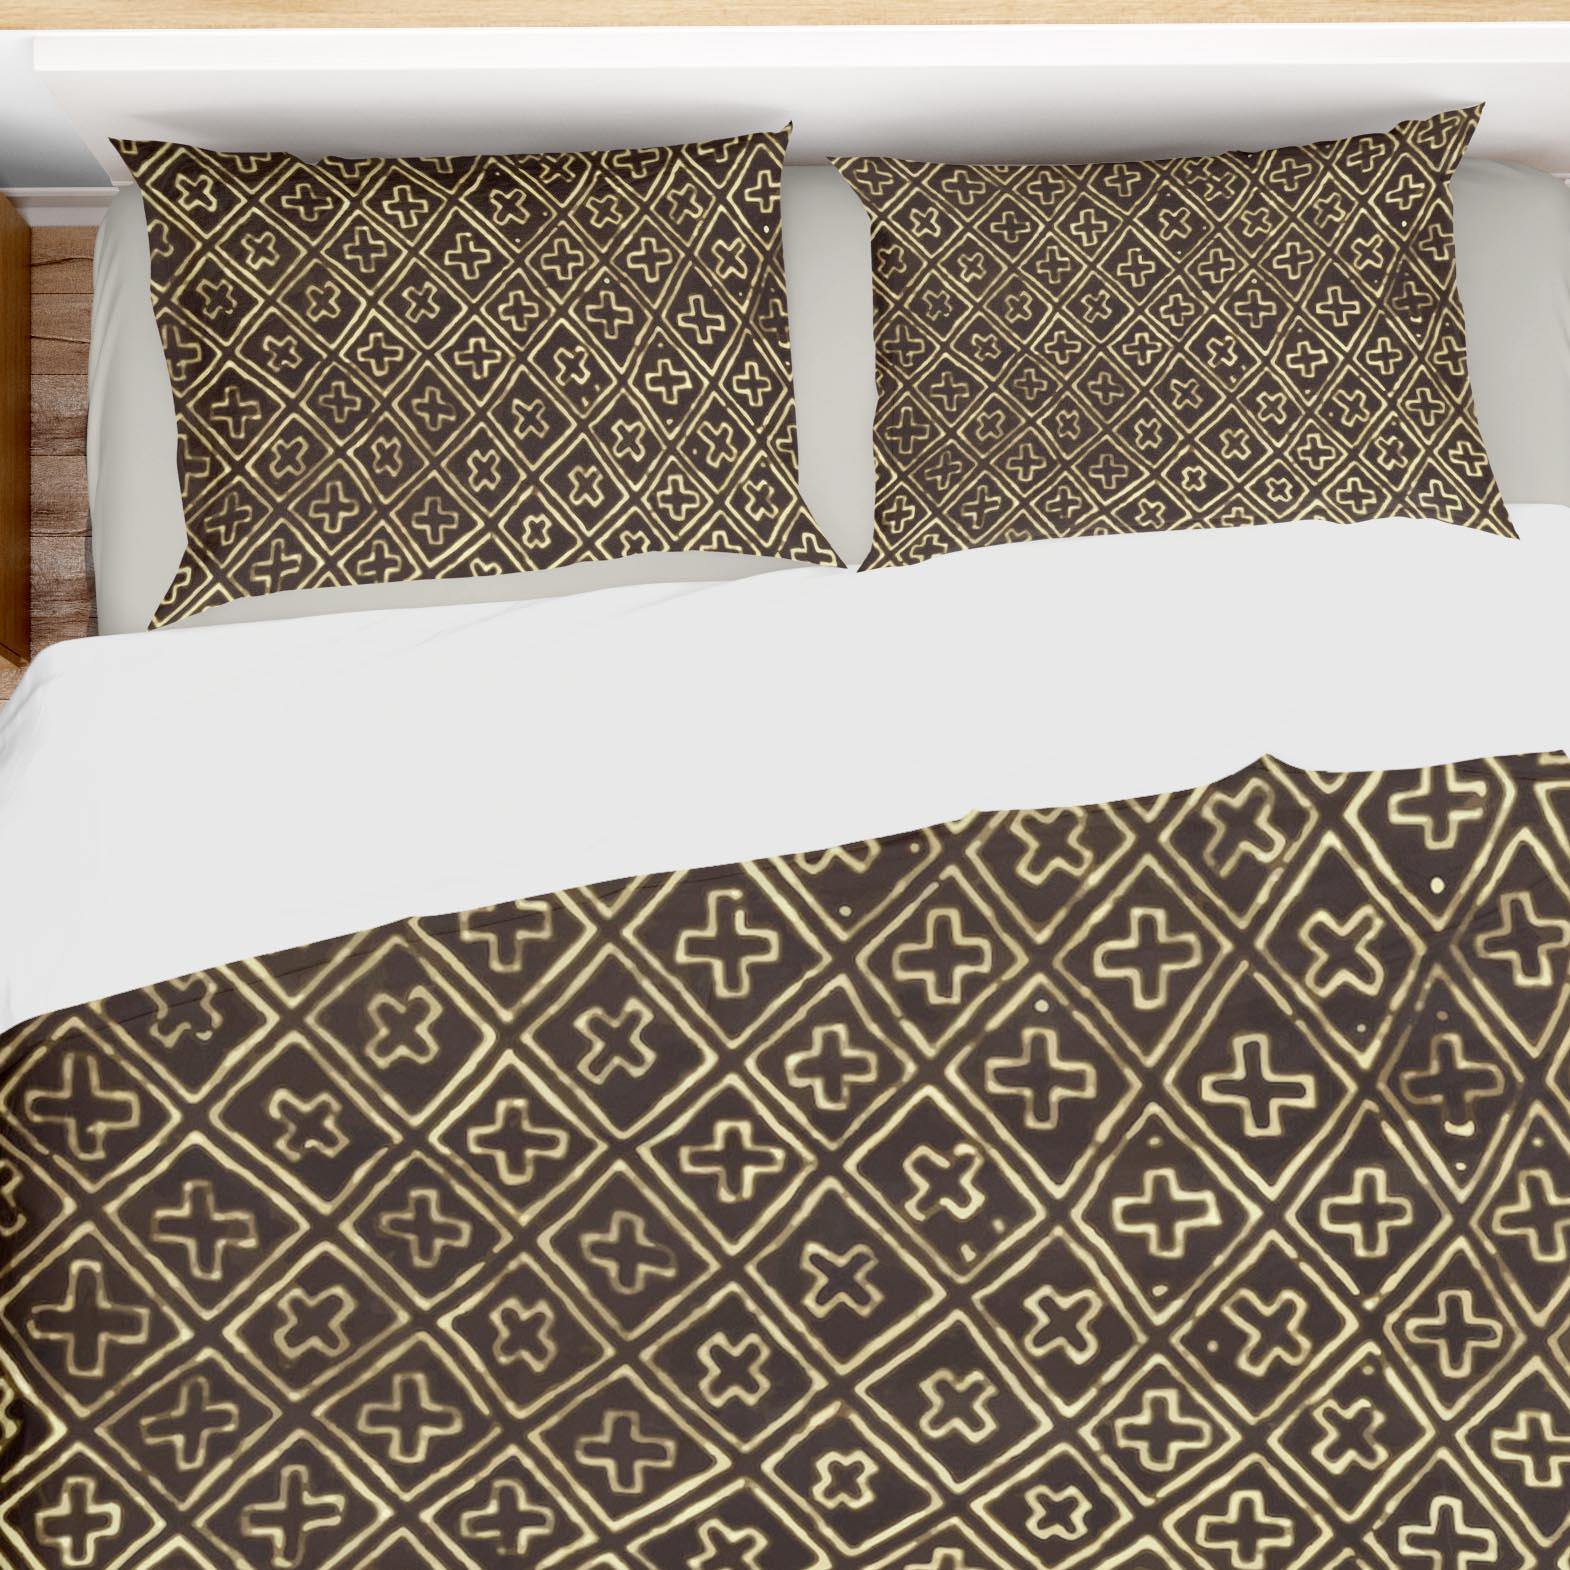 Bedding sets Bedding Set, Bogolan Mali African Design